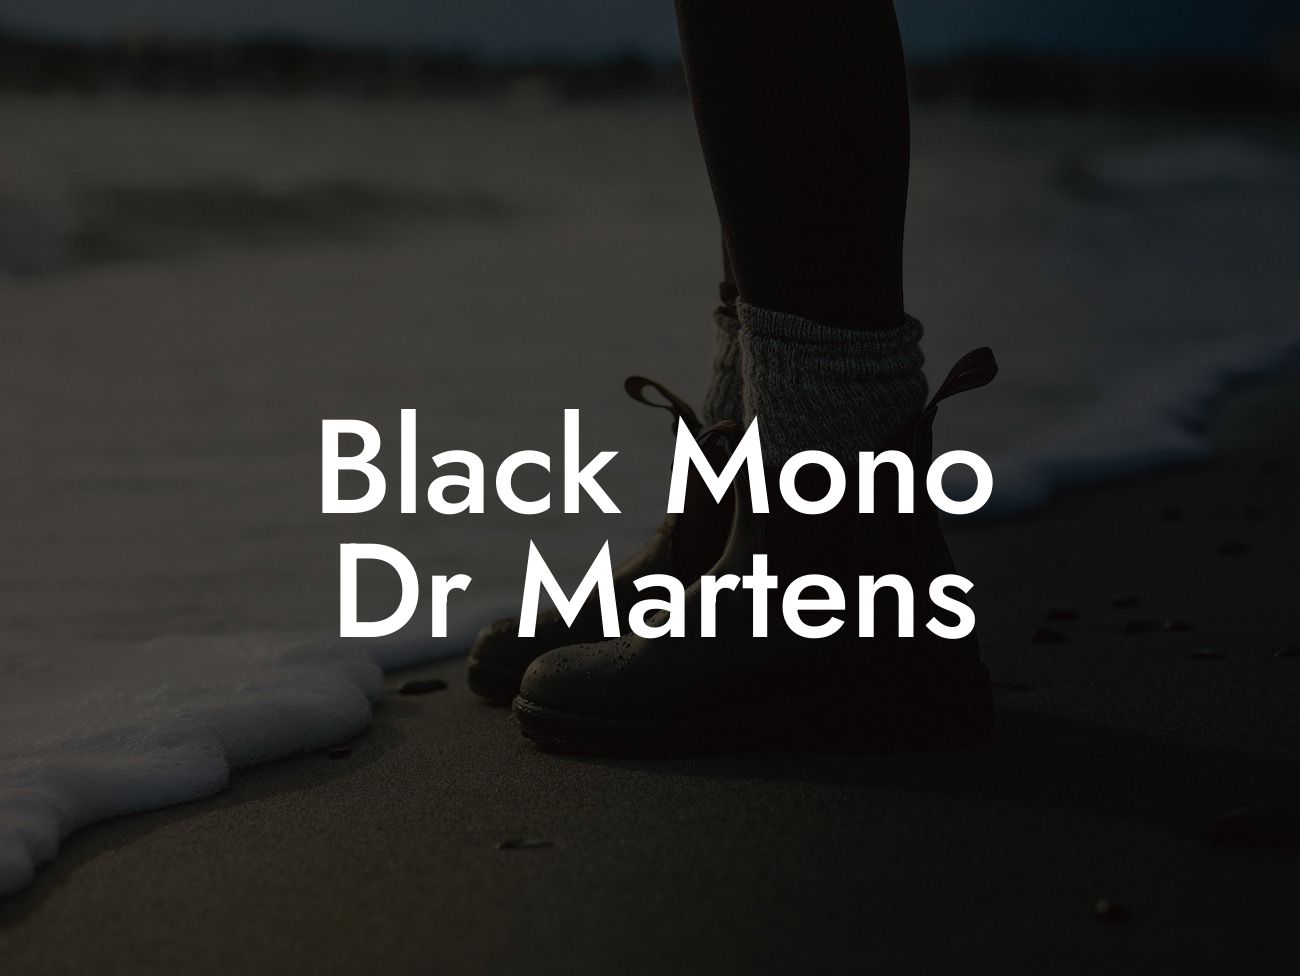 Black Mono Dr Martens